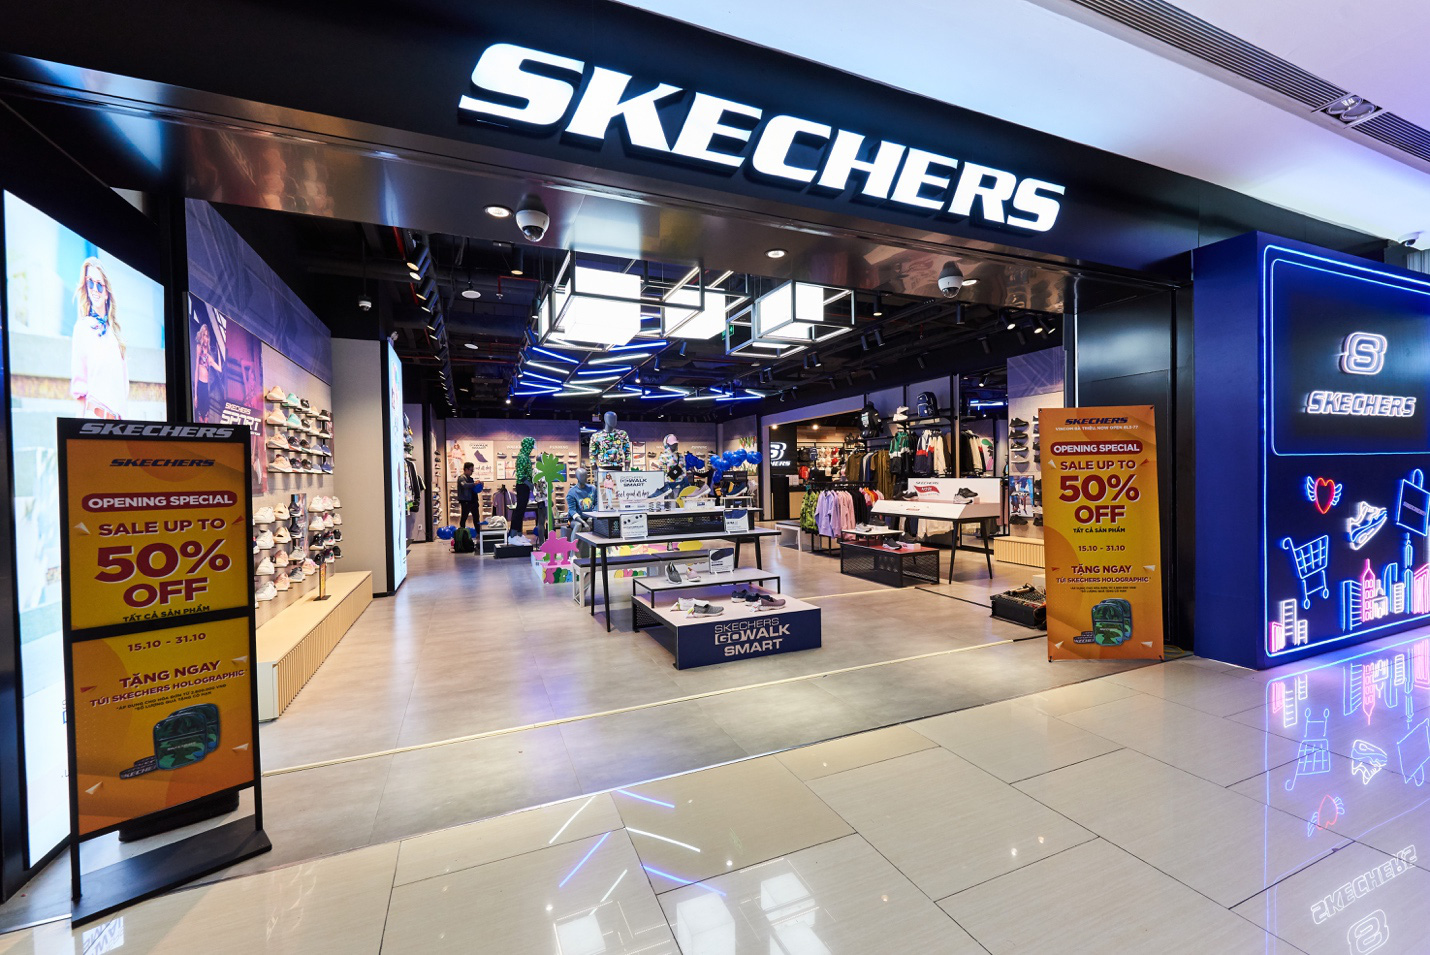 Khai trương store bậc nhất Việt Nam, Skechers tung ưu đãi lên đến 50% - Ảnh 6.